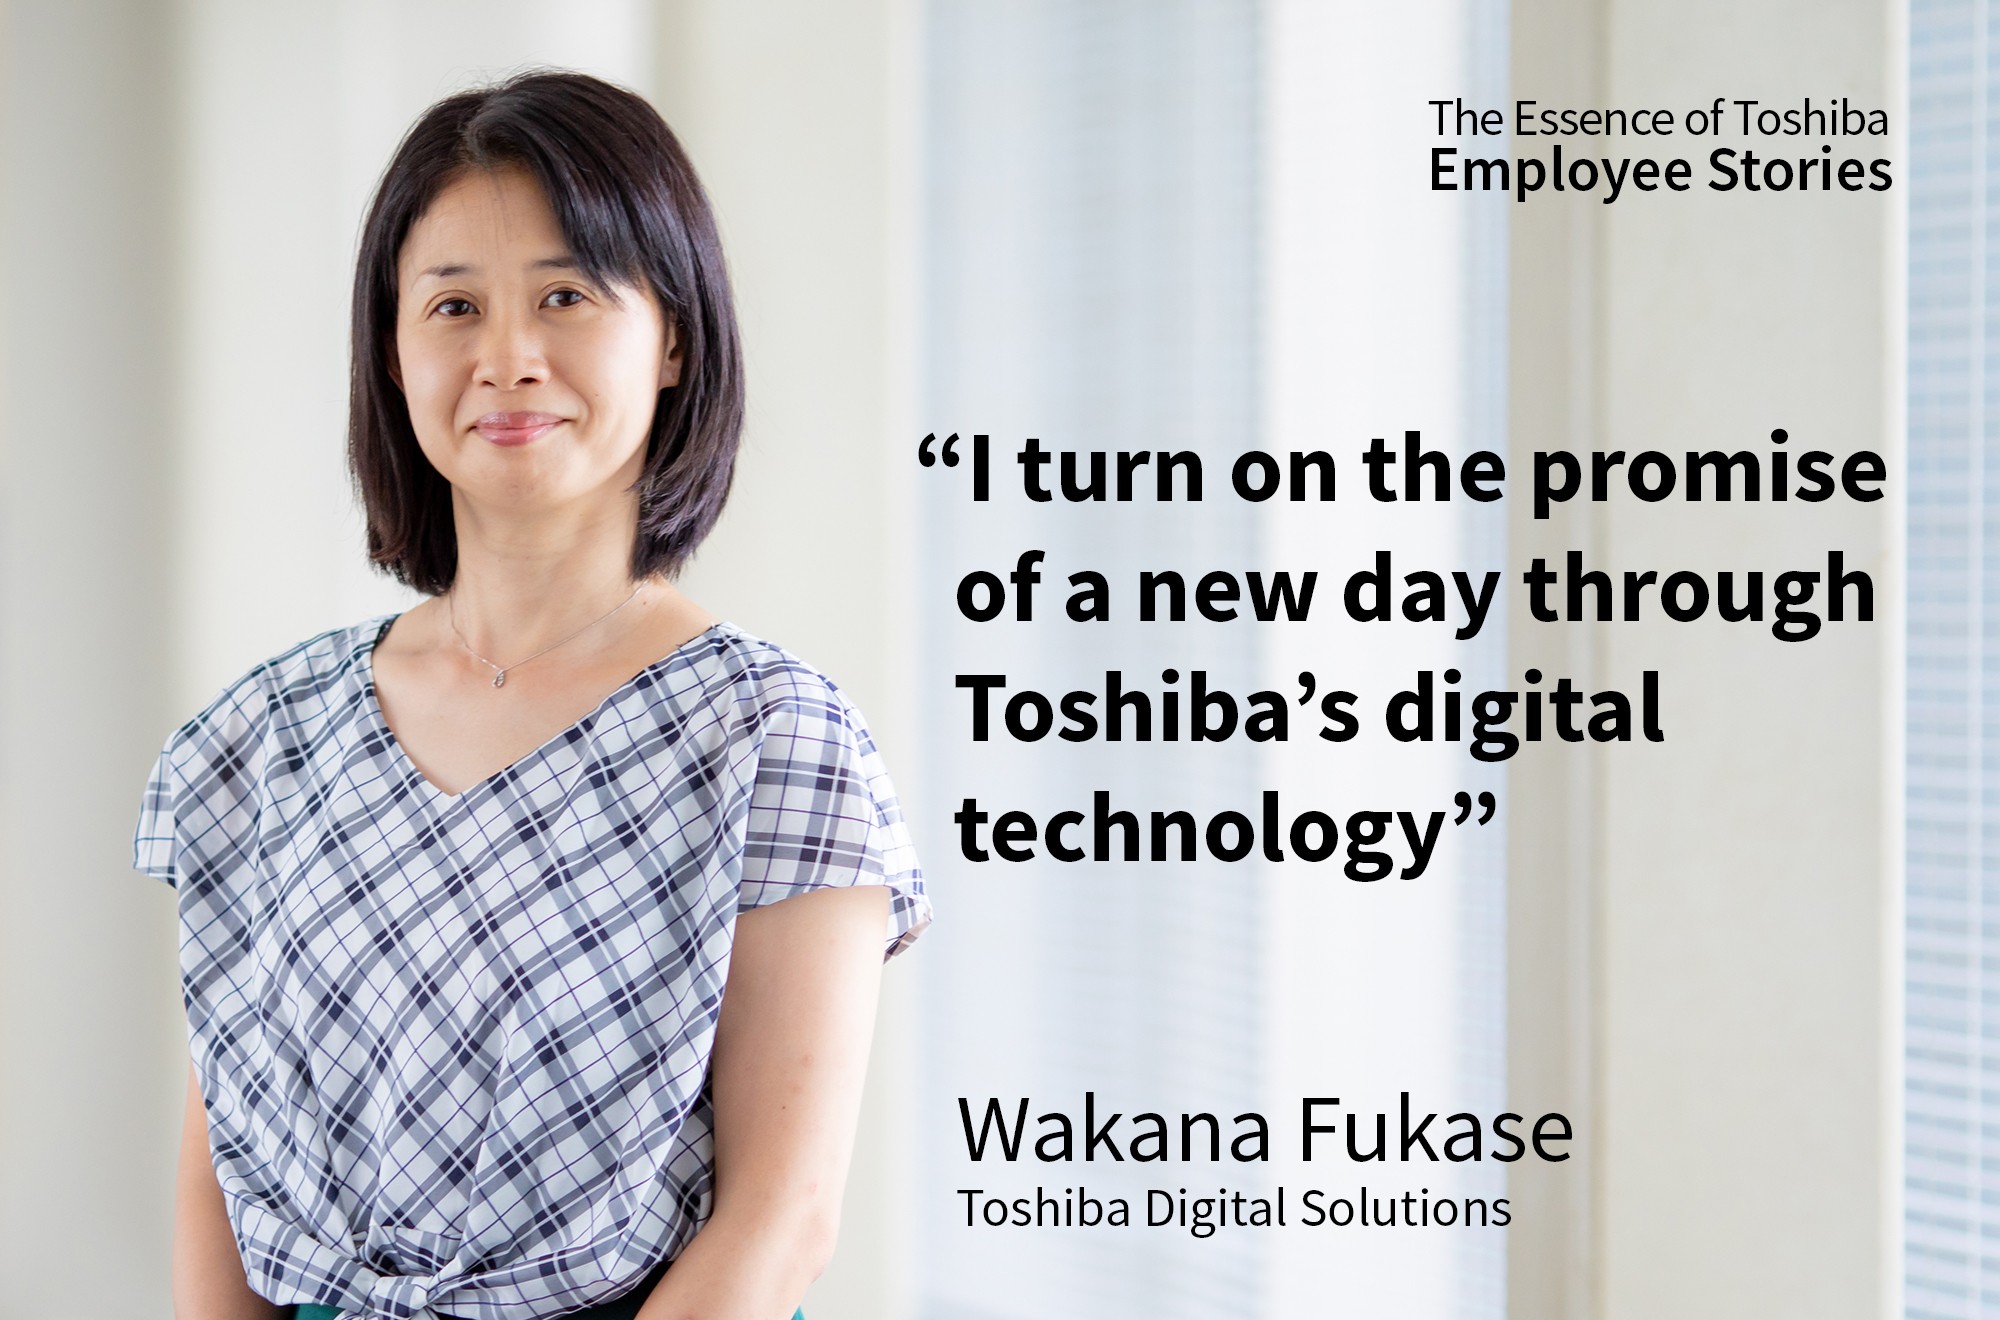 Toshiba Digital Solutions Corporation: Wakana Fukase